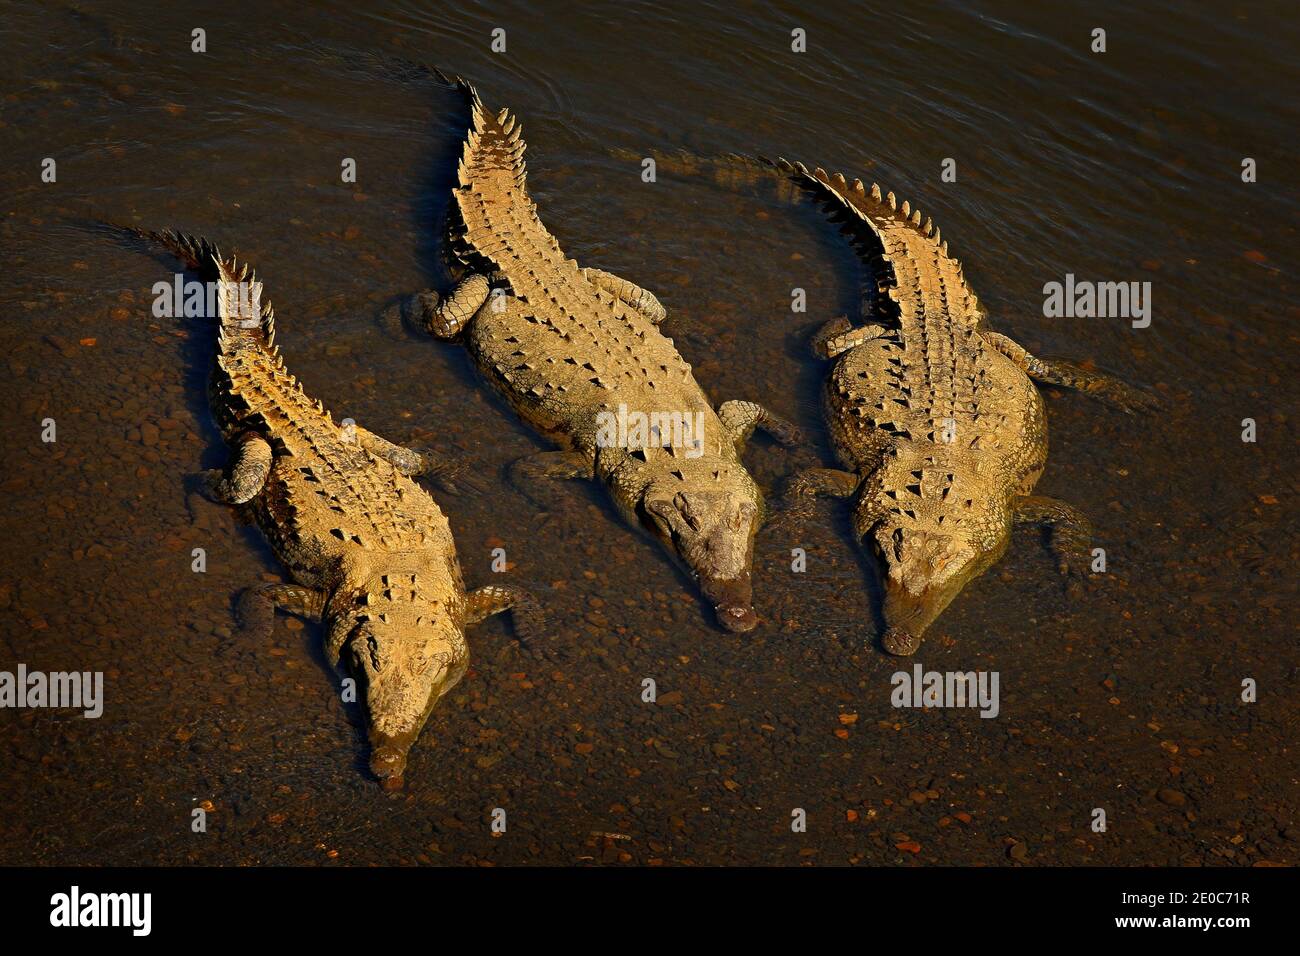 Coccodrilli americani, coccodrillo acutus, tre animali in acqua. Fauna selvatica scena dalla natura, Tarcoles, Costa Rica. Animali pericolosi nel fiume. Foto Stock